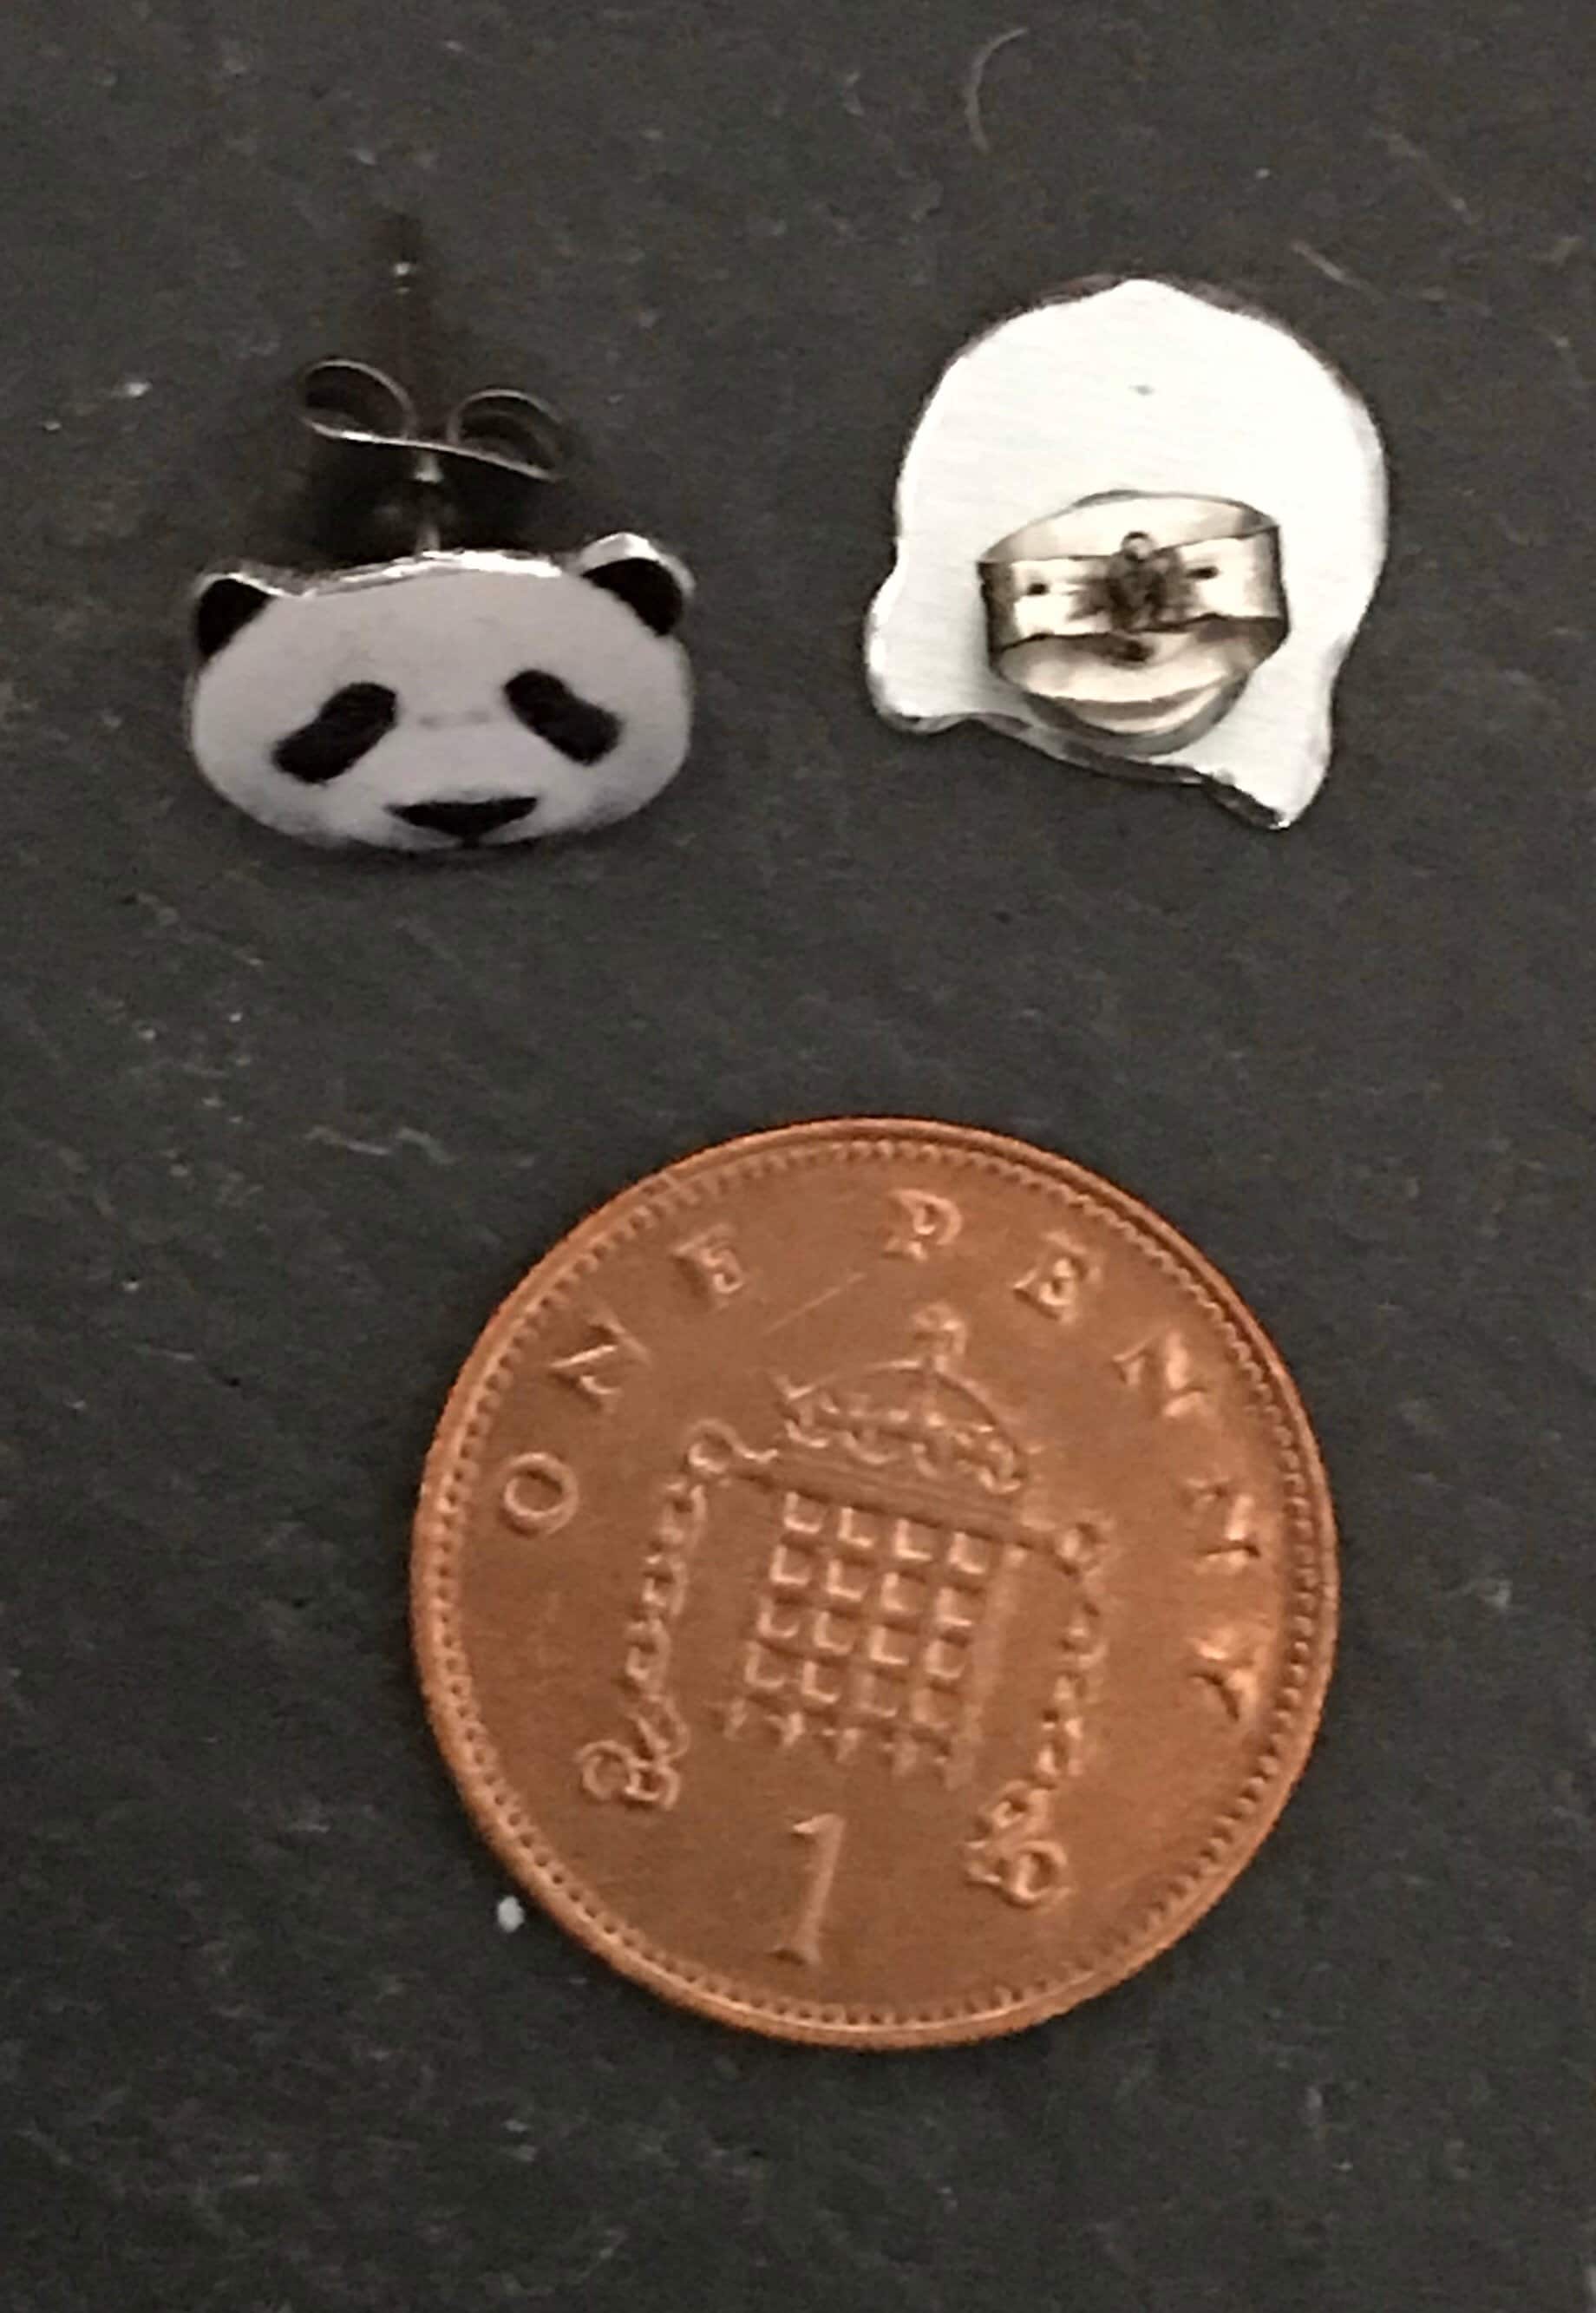 Cute Pandas - Panda Stud Earrings - Panda Earrings - Cute Panda Earrings - Panda Gift - Panda Studs